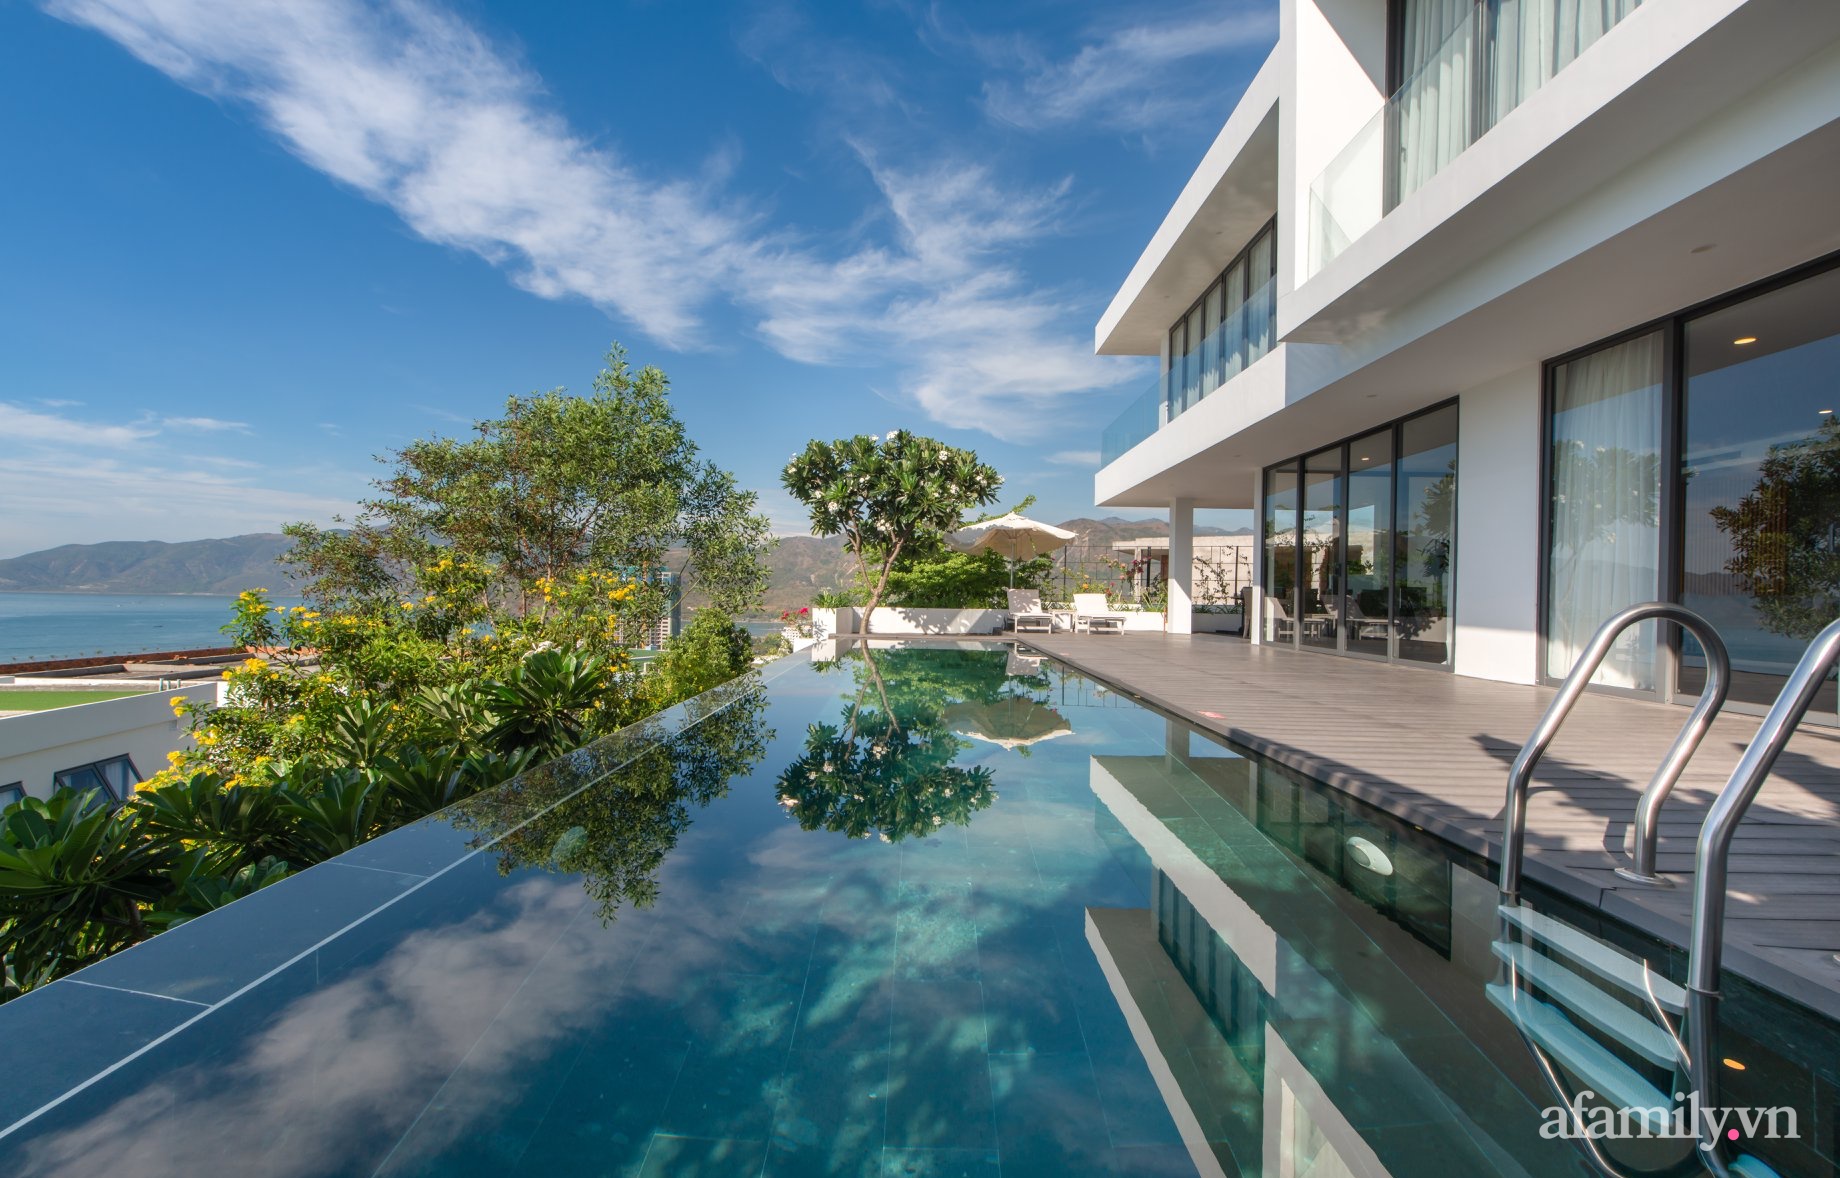 Ngôi nhà hướng biển đẹp an nhiên với nội thất sang trọng cùng bể bơi vô cực ở Nha Trang - Ảnh 2.